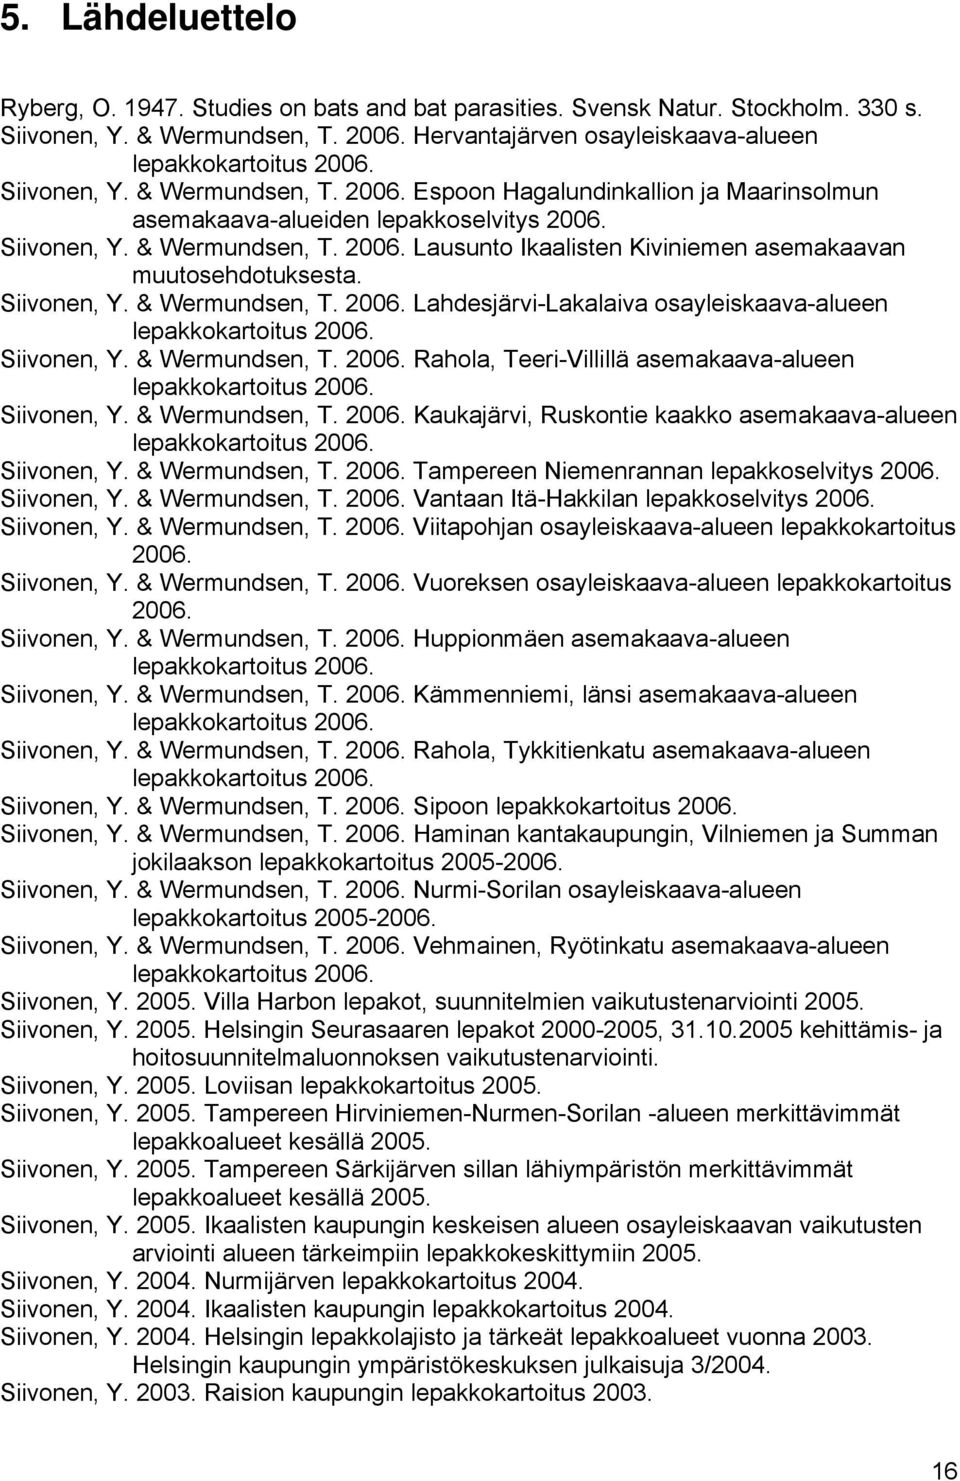 Siivonen, Y. & Wermundsen, T. 2006. Lahdesjärvi-Lakalaiva osayleiskaava-alueen lepakkokartoitus 2006. Siivonen, Y. & Wermundsen, T. 2006. Rahola, Teeri-Villillä asemakaava-alueen lepakkokartoitus 2006.